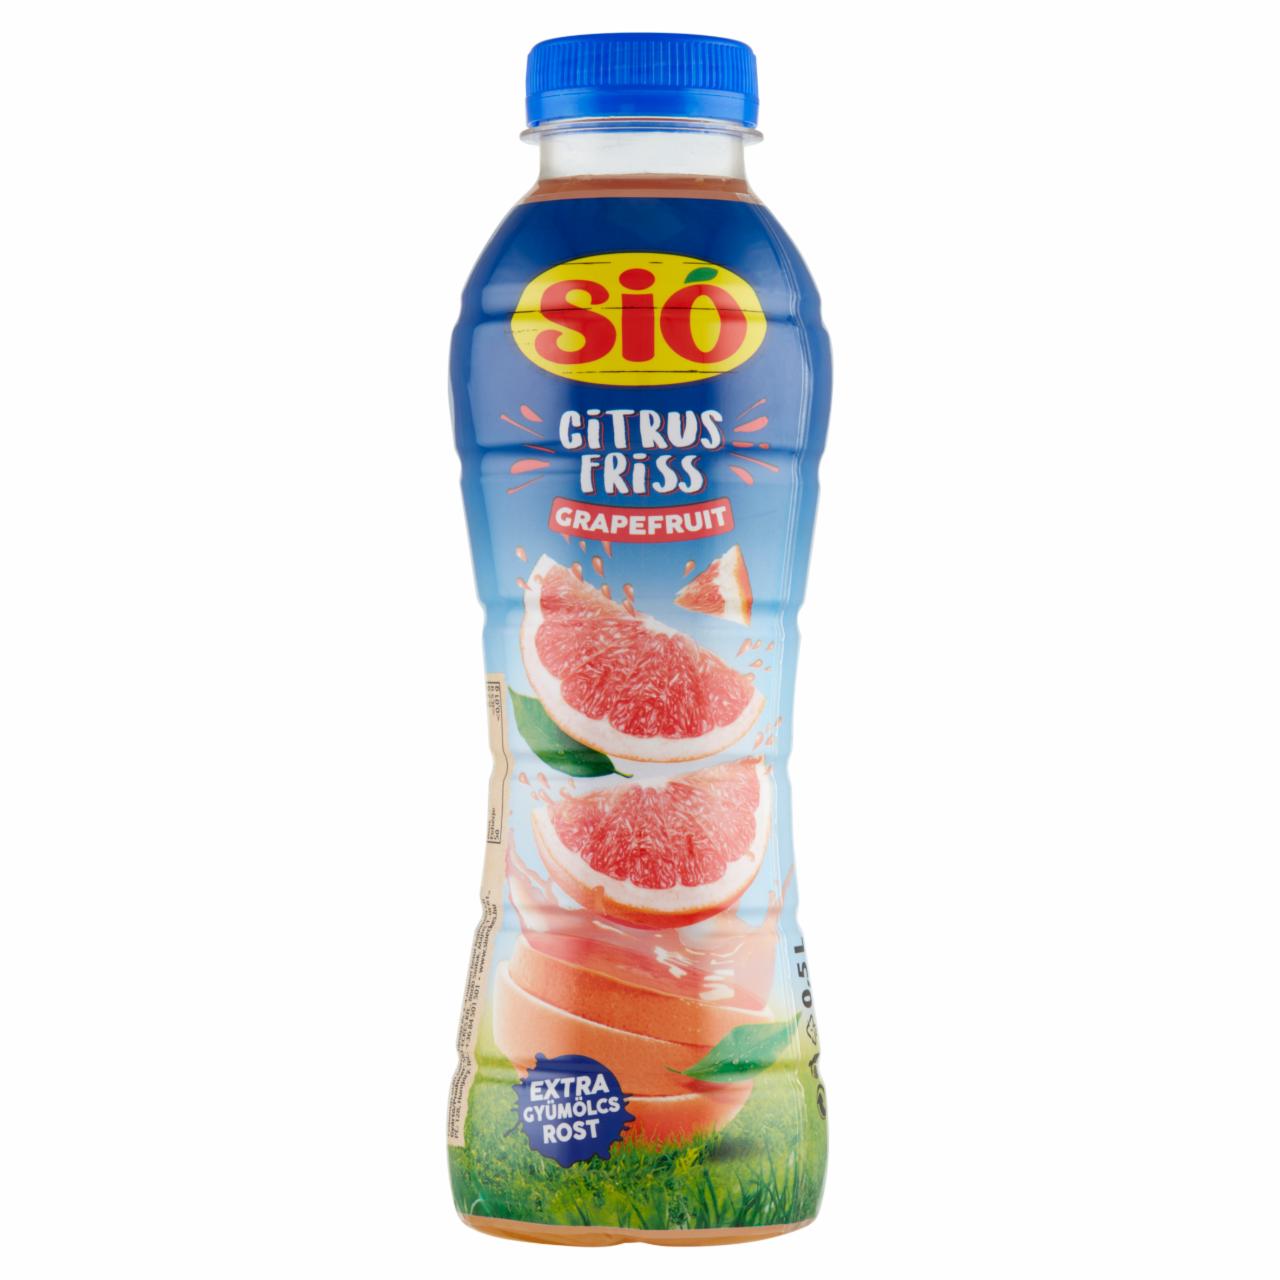 Képek - Sió Citrus Friss grapefruit ital gyümölcshússal 0,5 l